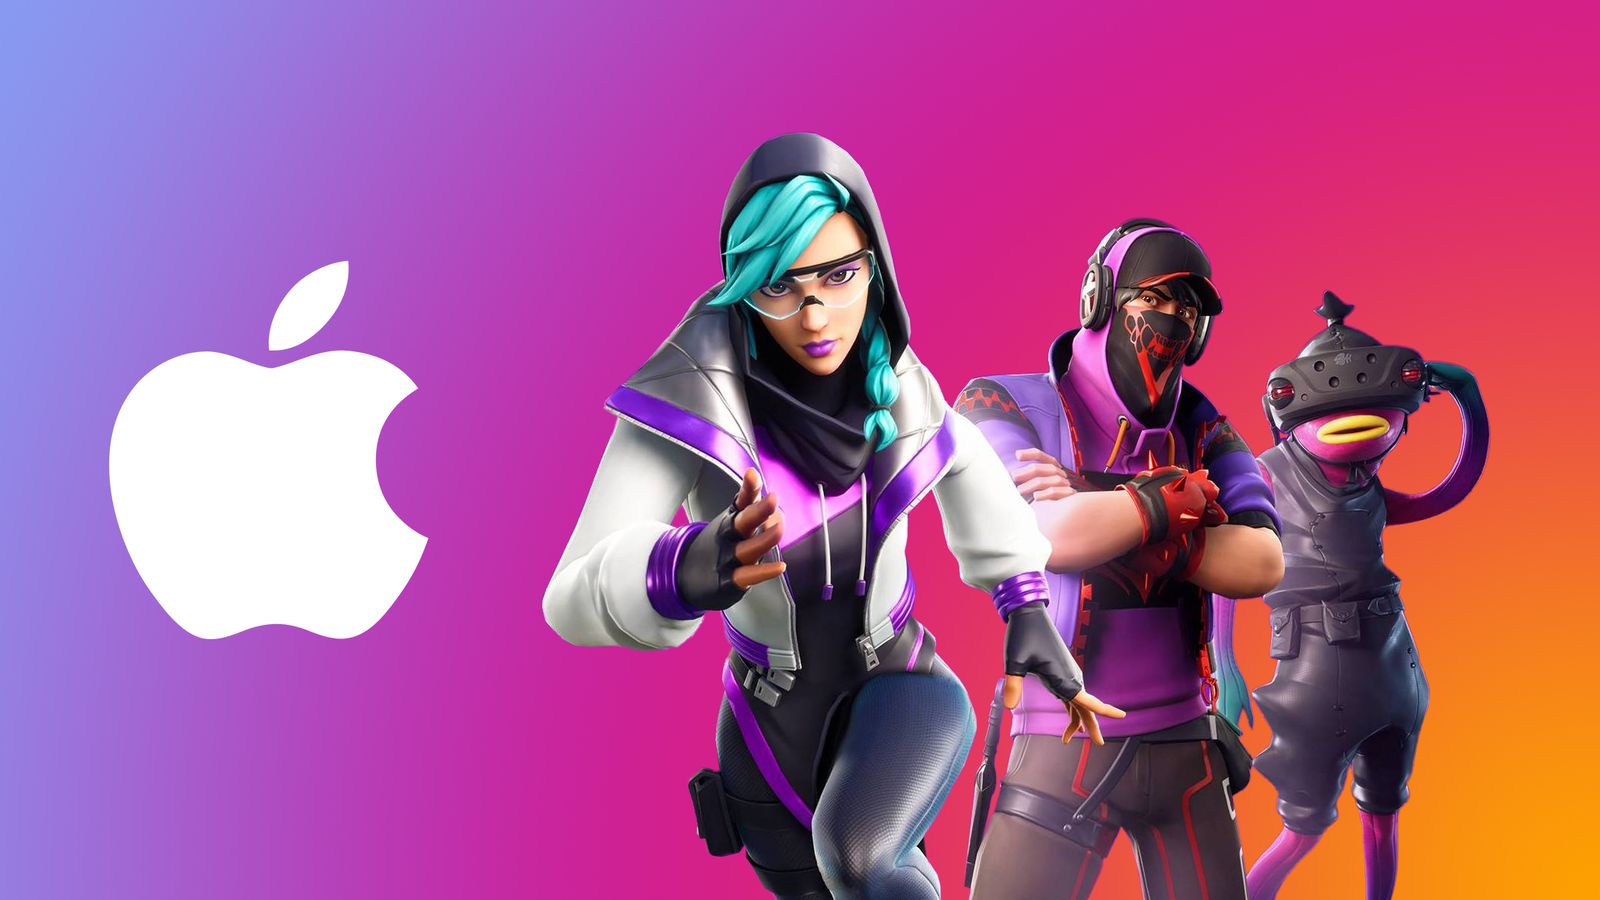 Χωρίς αλλαγές το App Store επί του παρόντος καθώς η Apple κερδίζει μία έφεση εναντίον της Epic Games